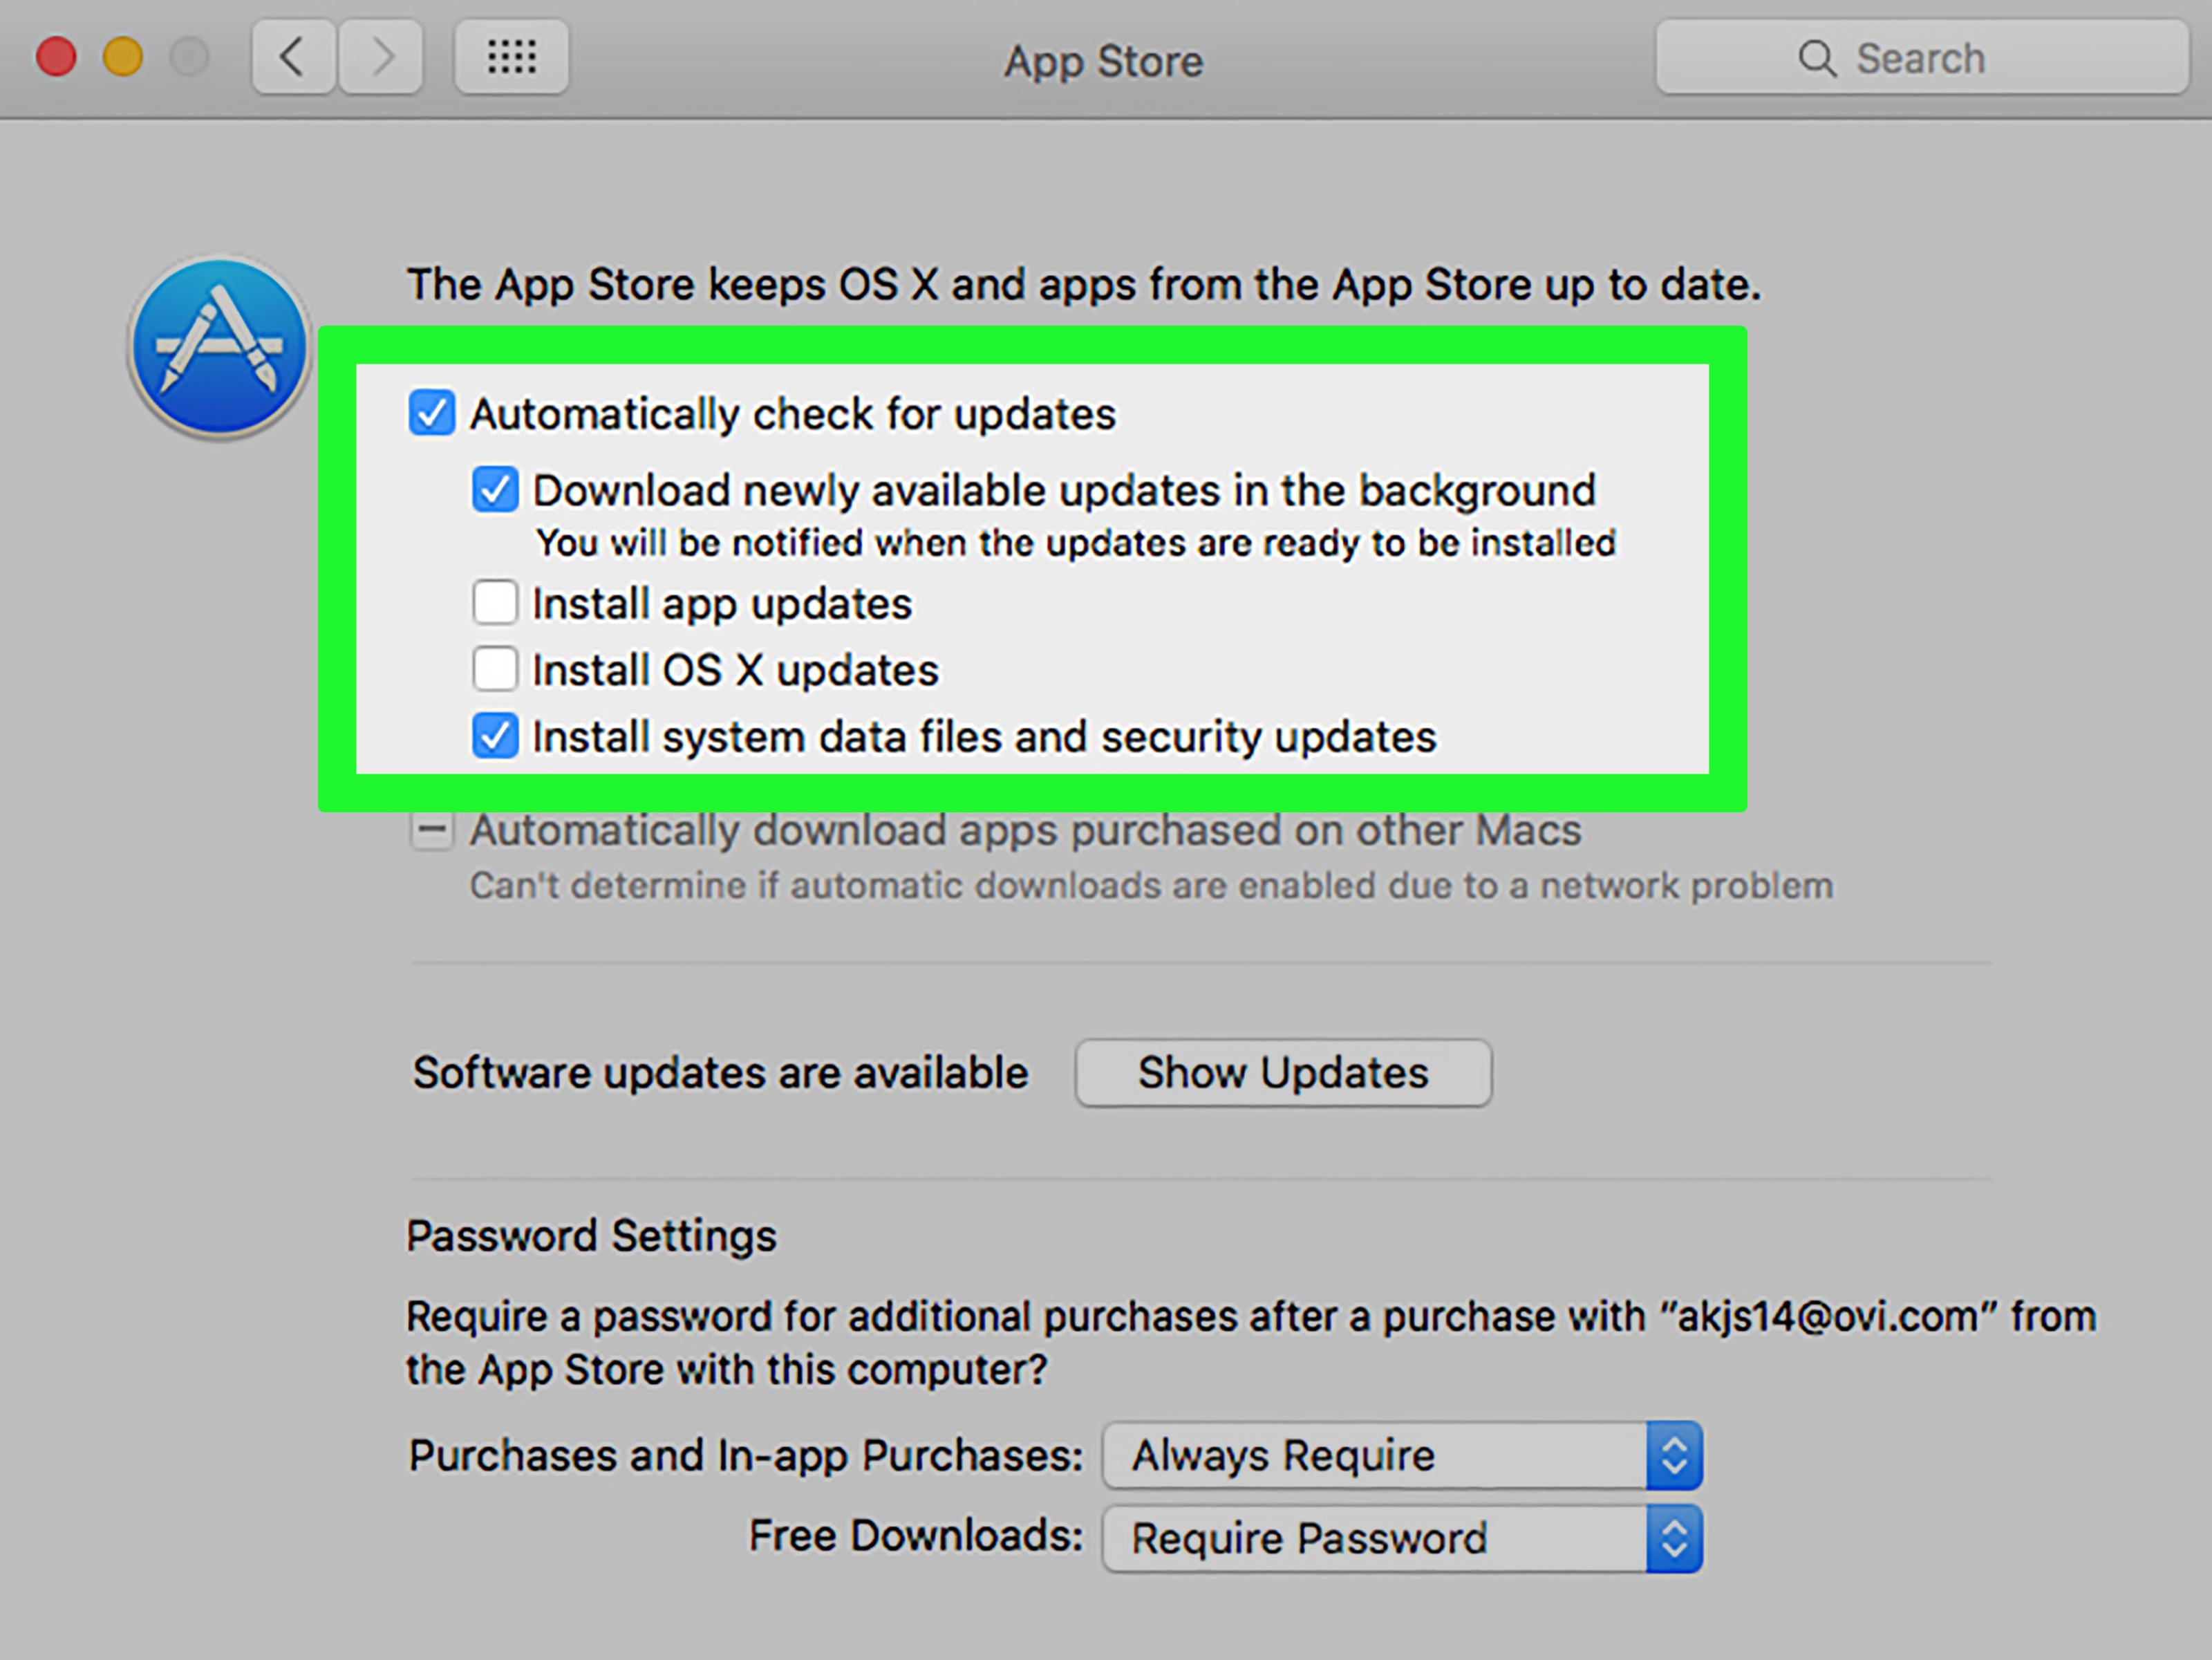 Download mac os 10.5 free